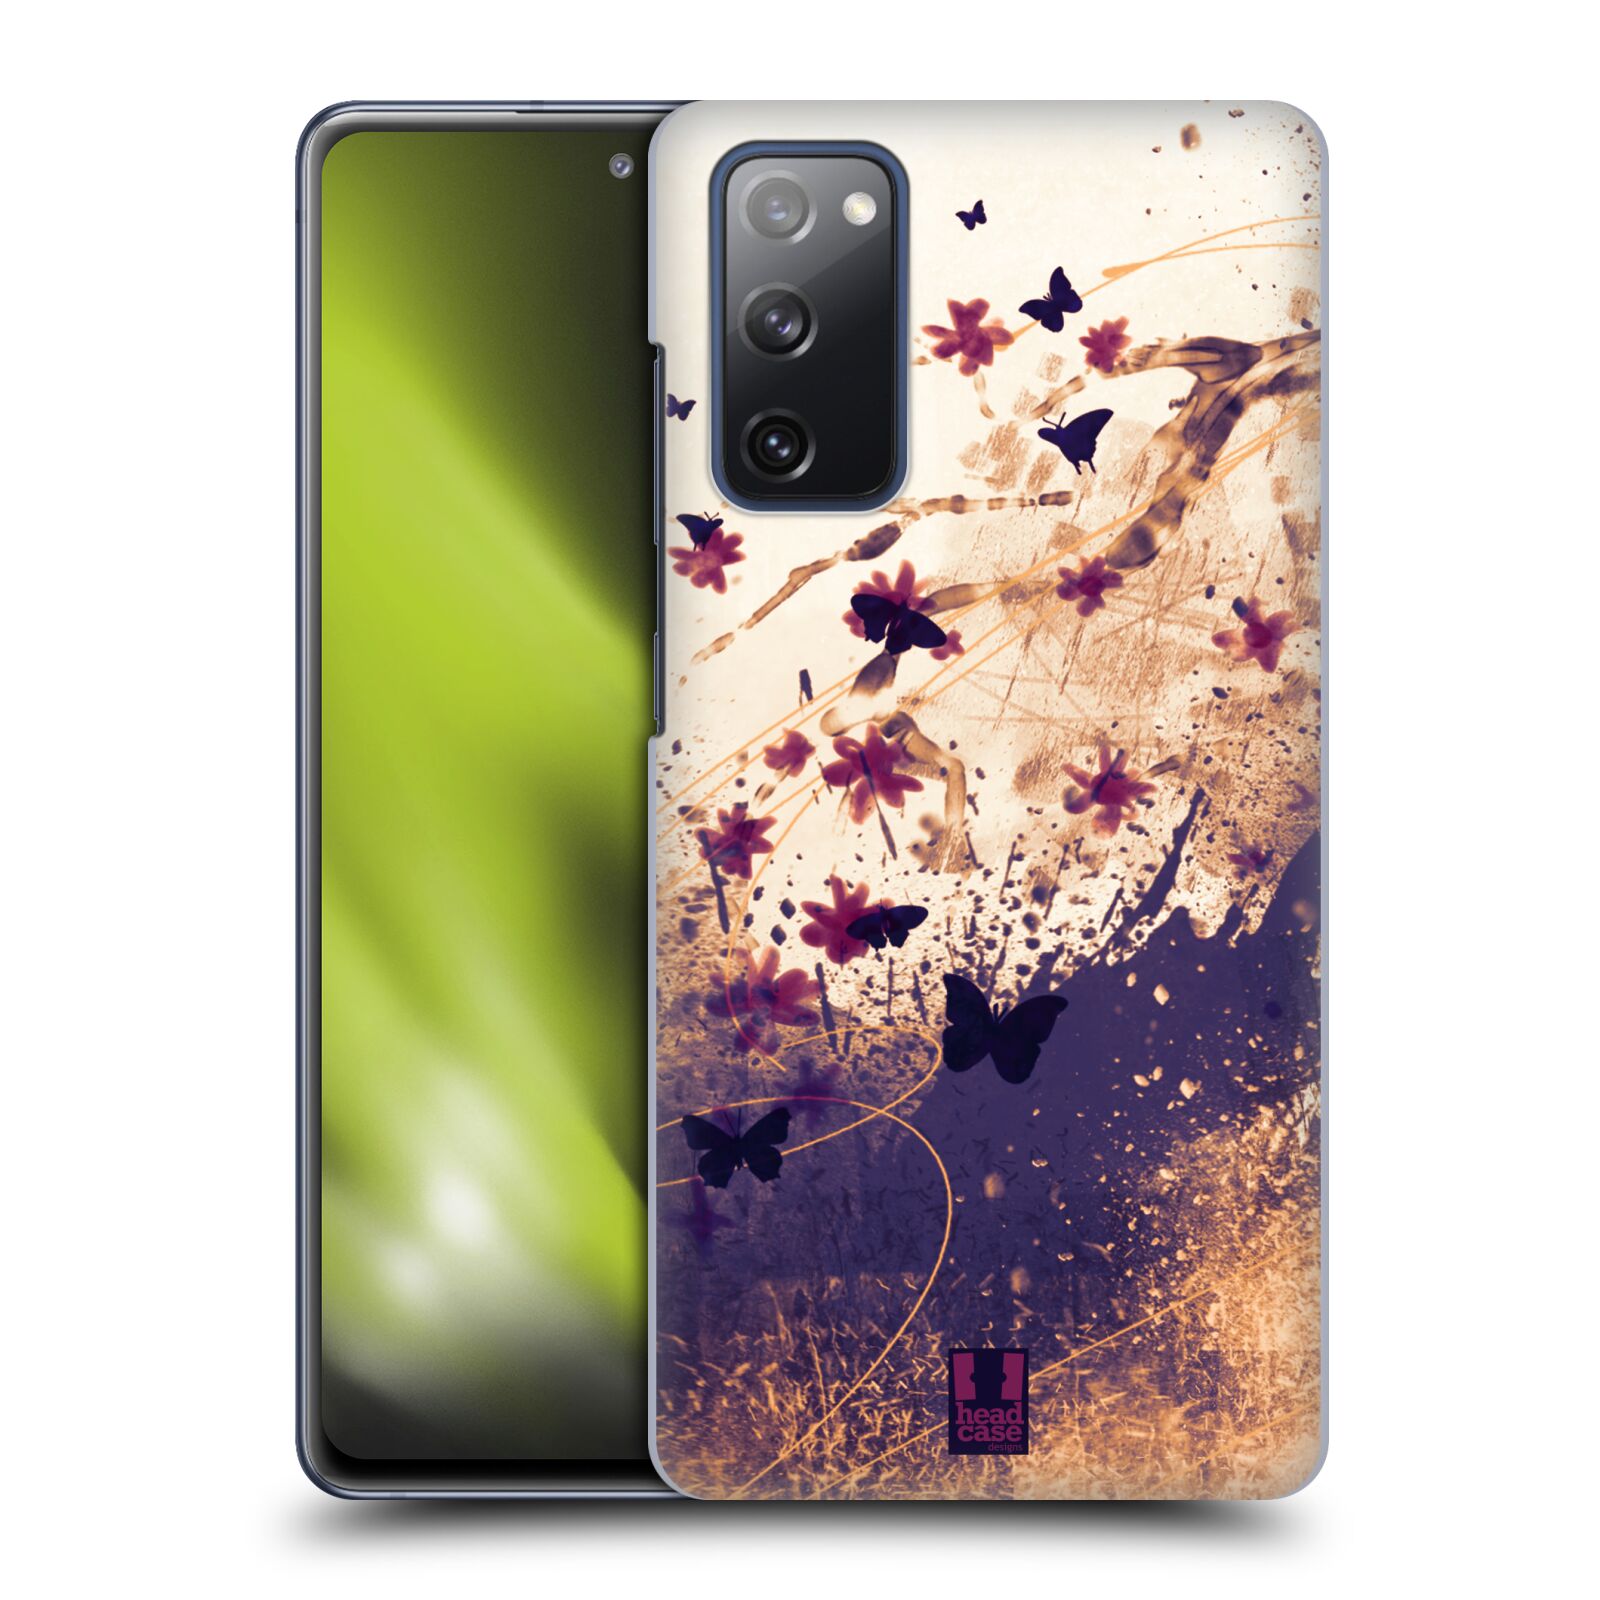 Zadní obal pro mobil Samsung Galaxy S20 FE / S20 FE 5G - HEAD CASE - Barevné květy a motýlci